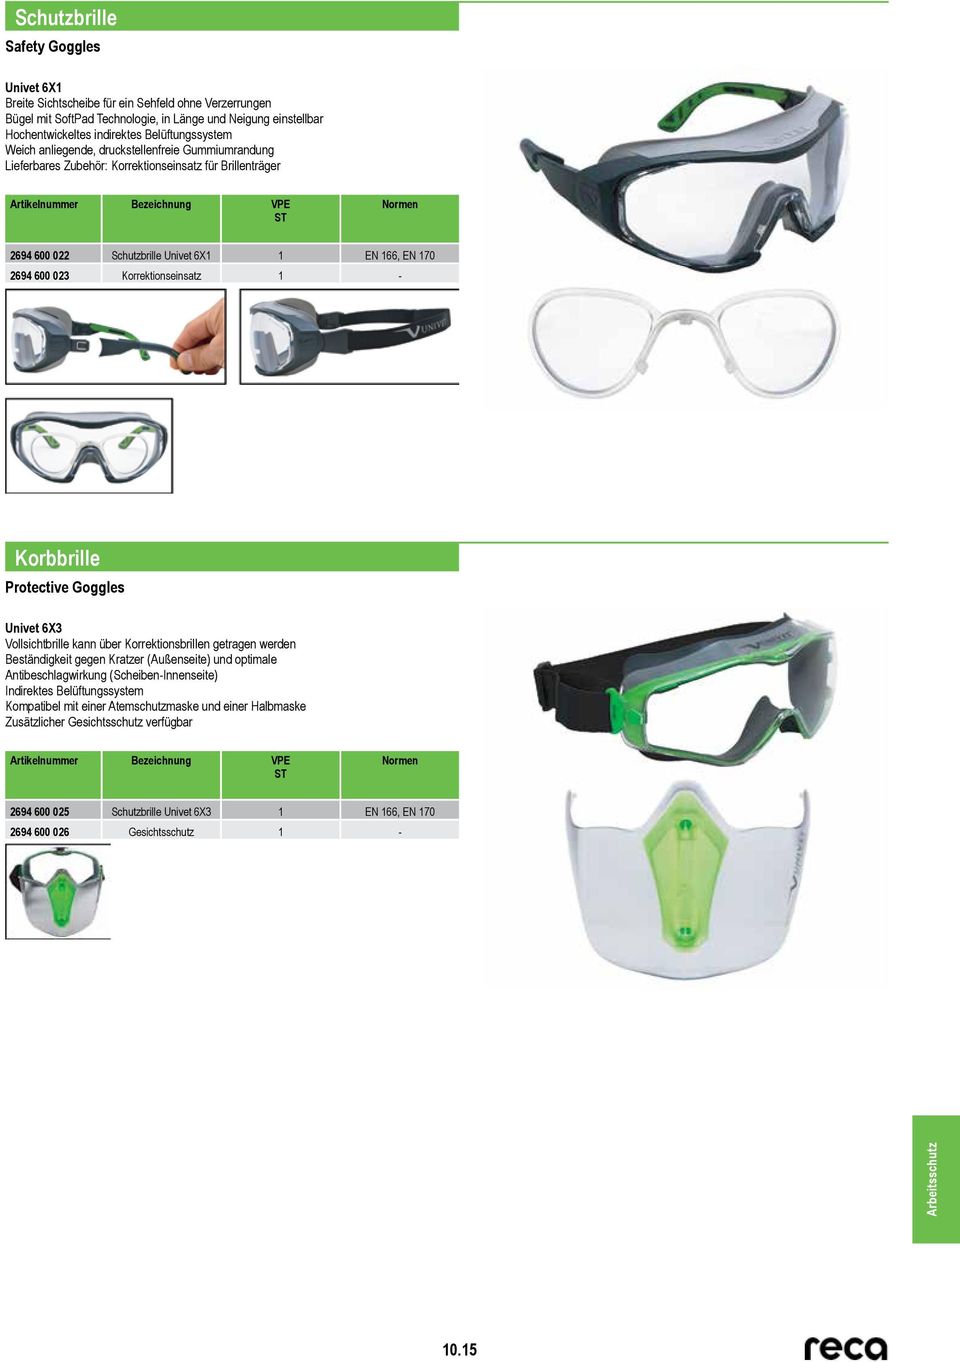 Korrektionseinsatz 1 - Korbbrille Protective Goggles Univet 6X3 Vollsichtbrille kann über Korrektionsbrillen getragen werden Beständigkeit gegen Kratzer (Außenseite) und optimale Antibeschlagwirkung